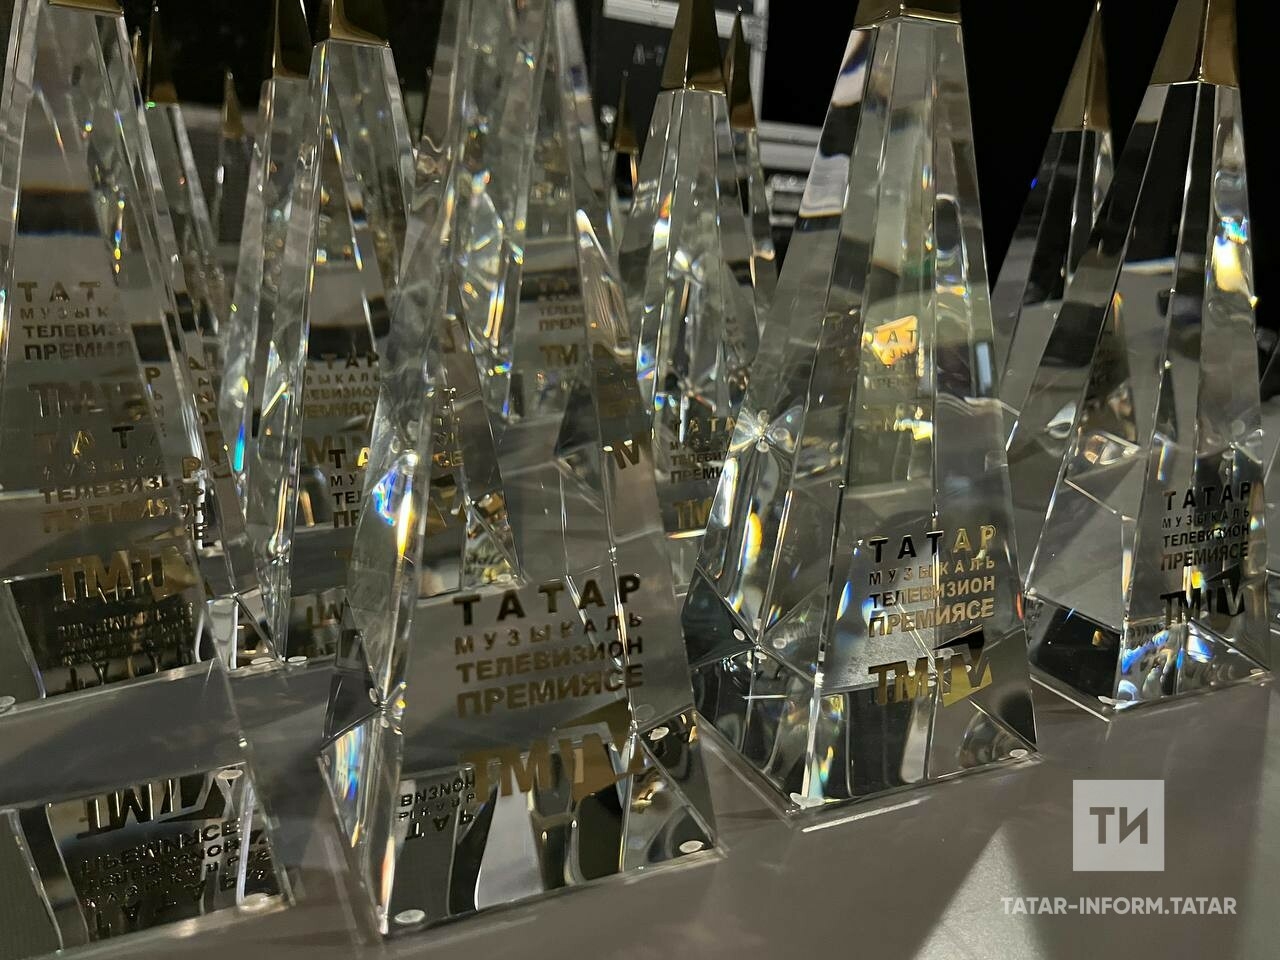 «Пирамида» концертлар залында ТМТВ премияләрен тапшыру тантанасы башланды